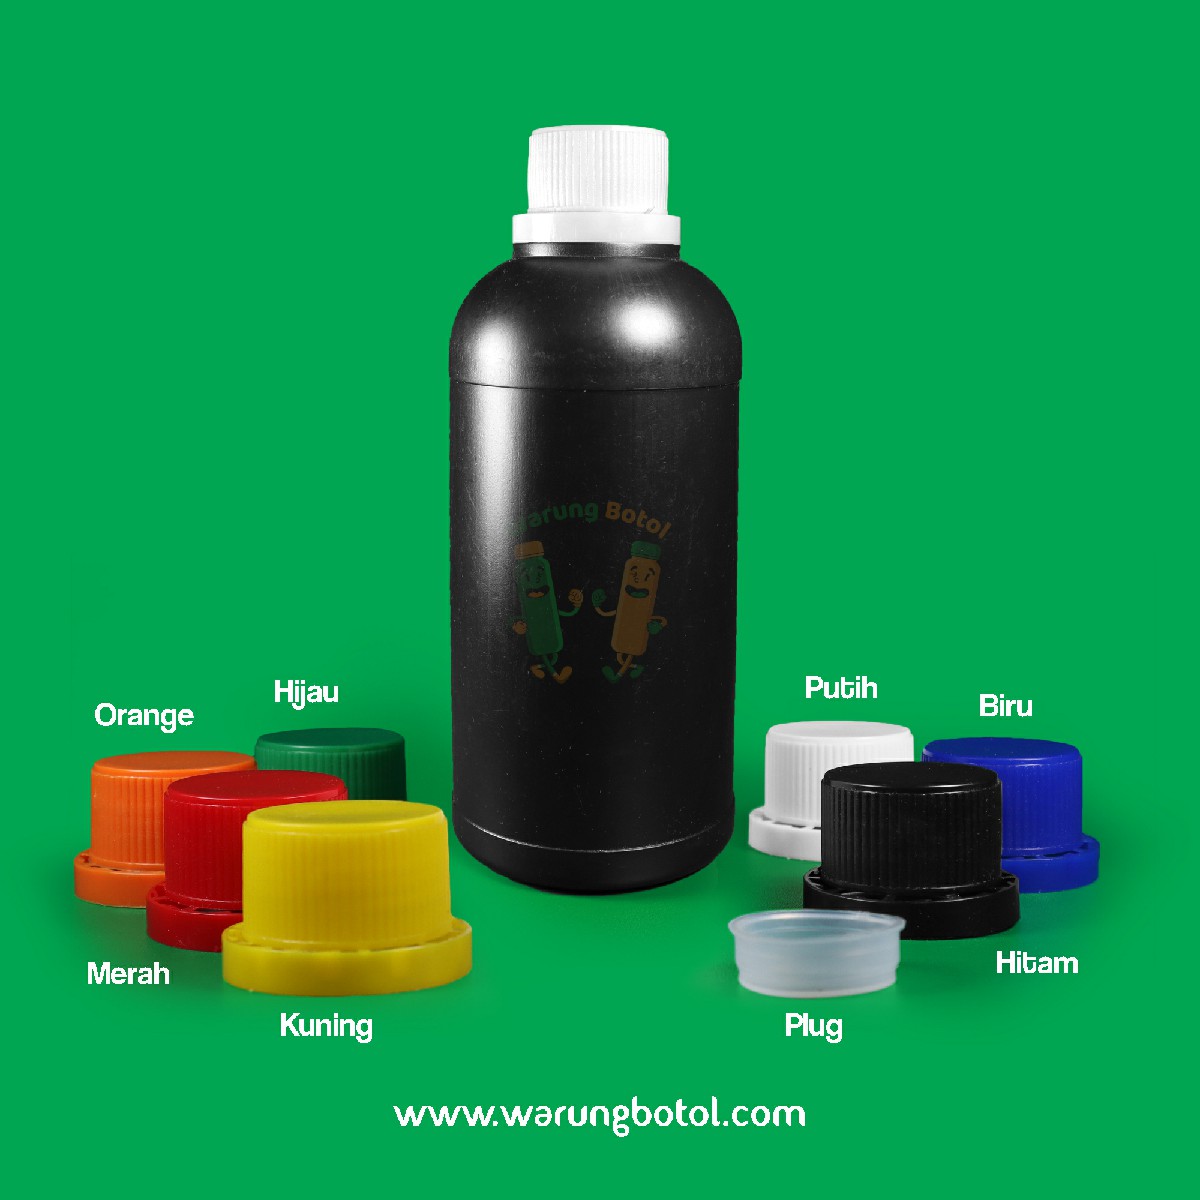 distributor toko jual botol plastik labor untuk bahan kimia 500ml hitam murah terdekat bandung jakarta bogor bekasi